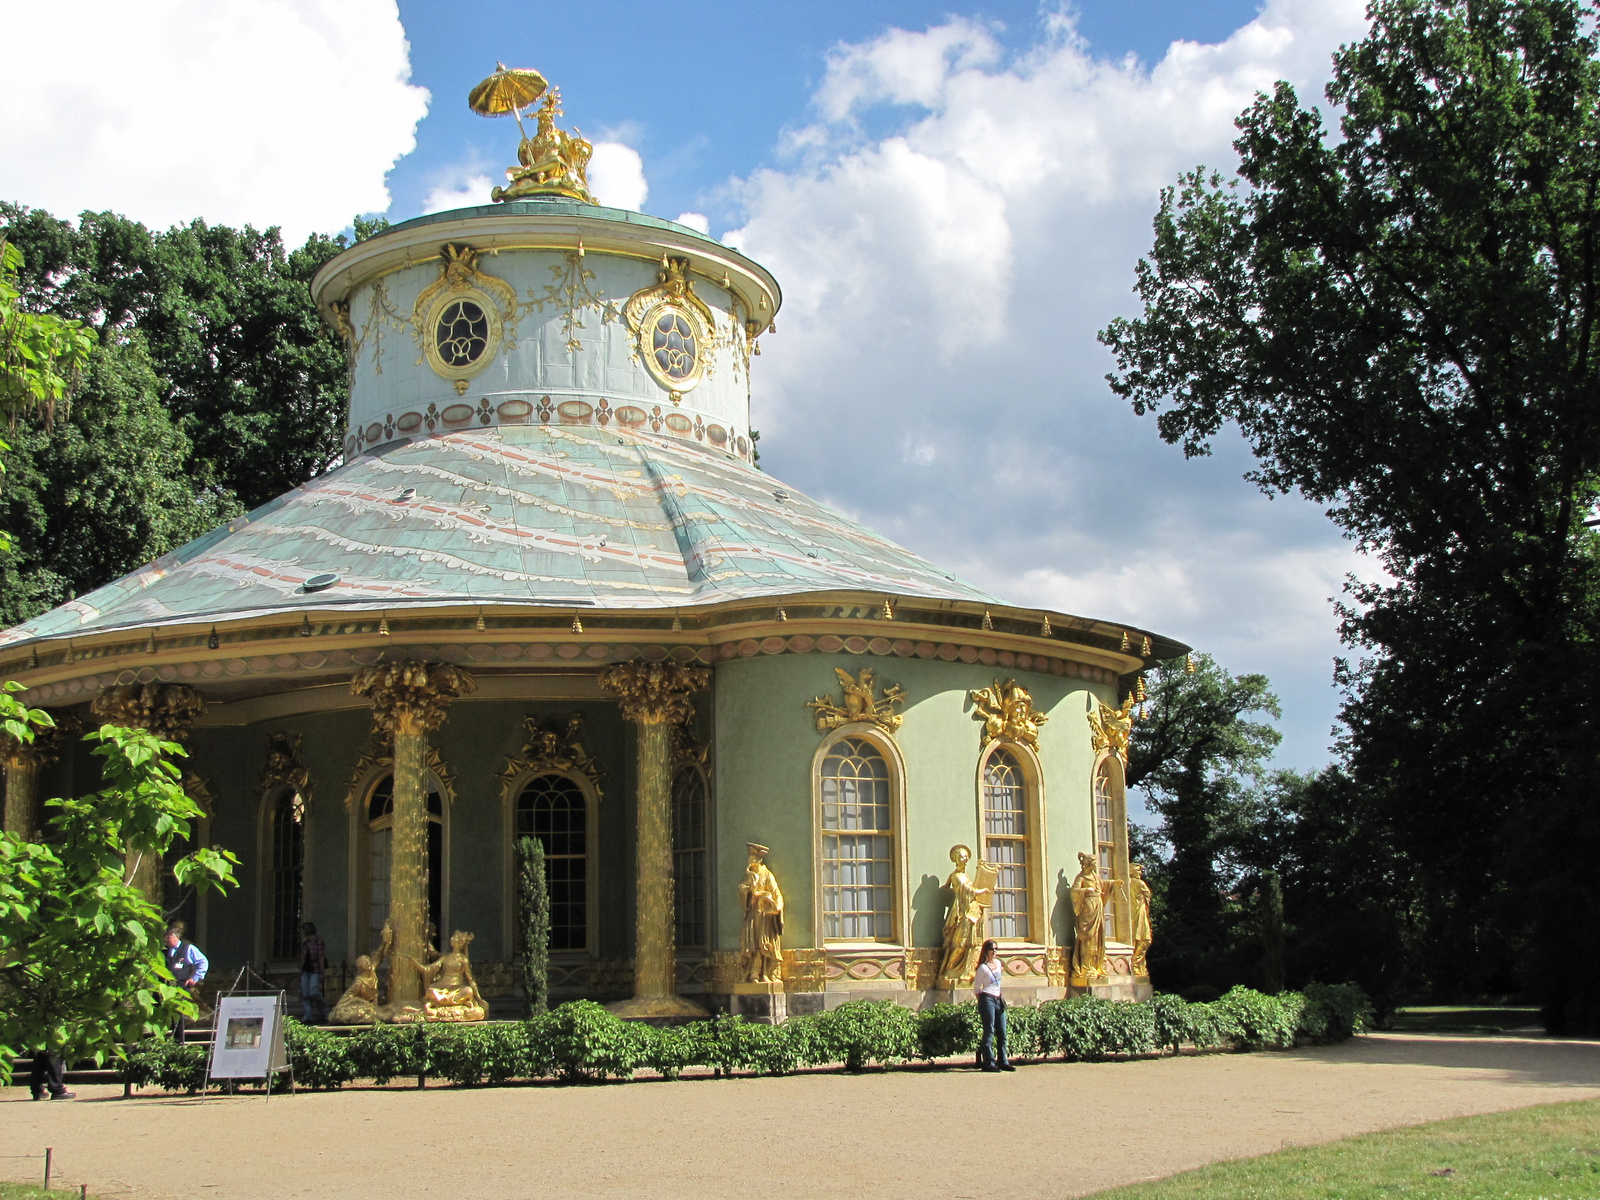 Potsdam, Sanssouci, a Kínai teaház pavilon, SzG3